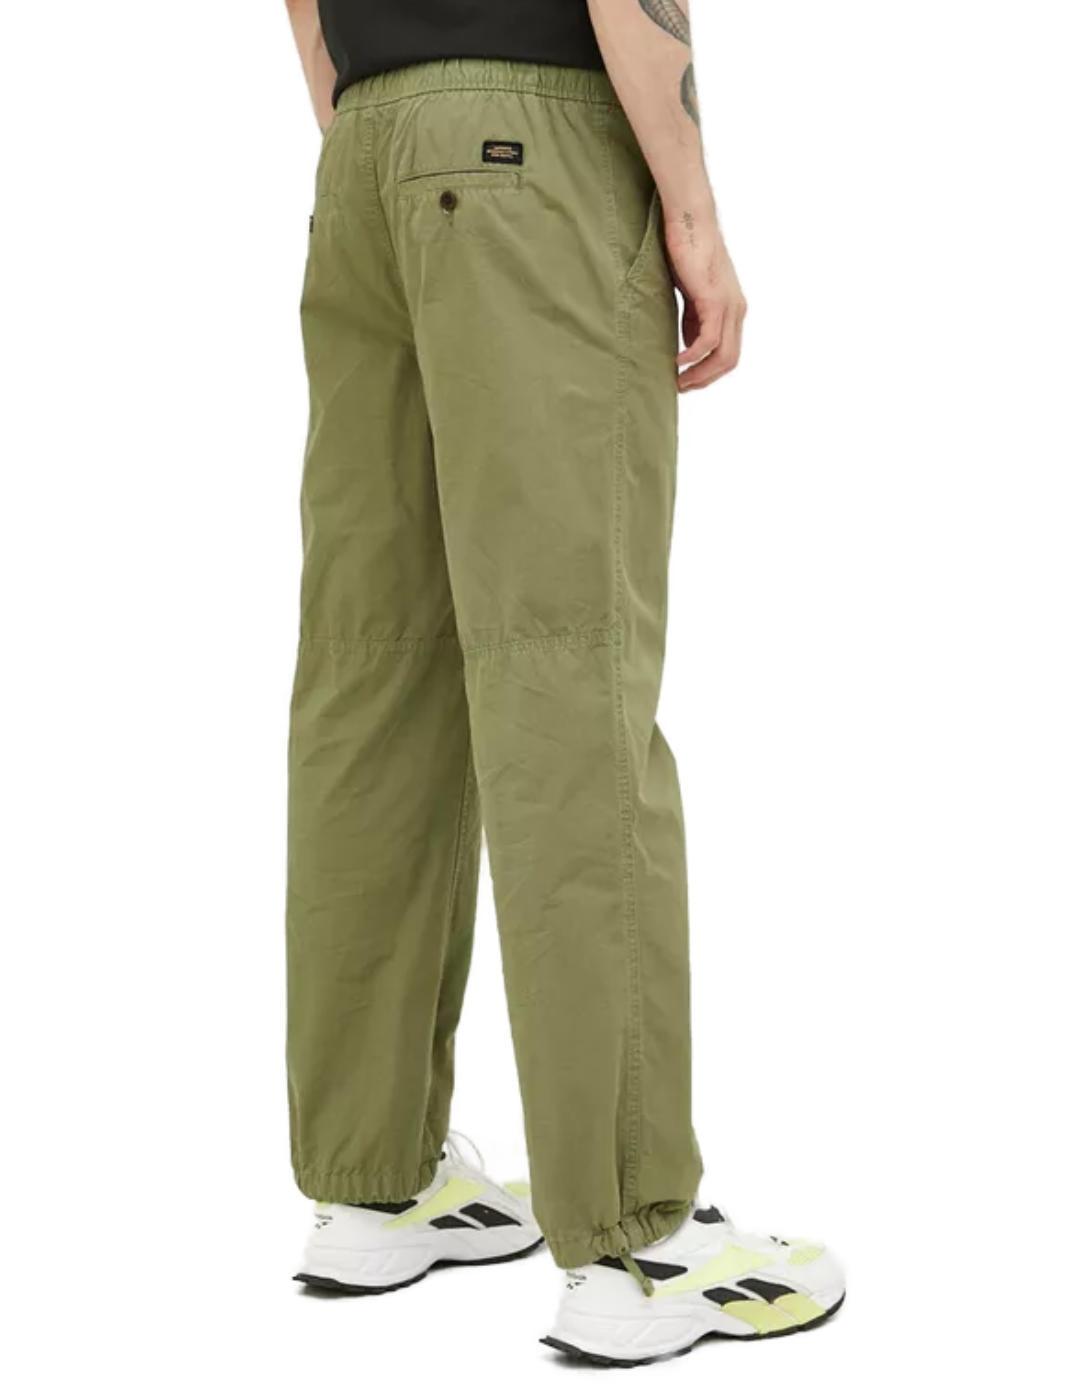 Pantalón Superdry Woven verde Regular ajustable para hombre